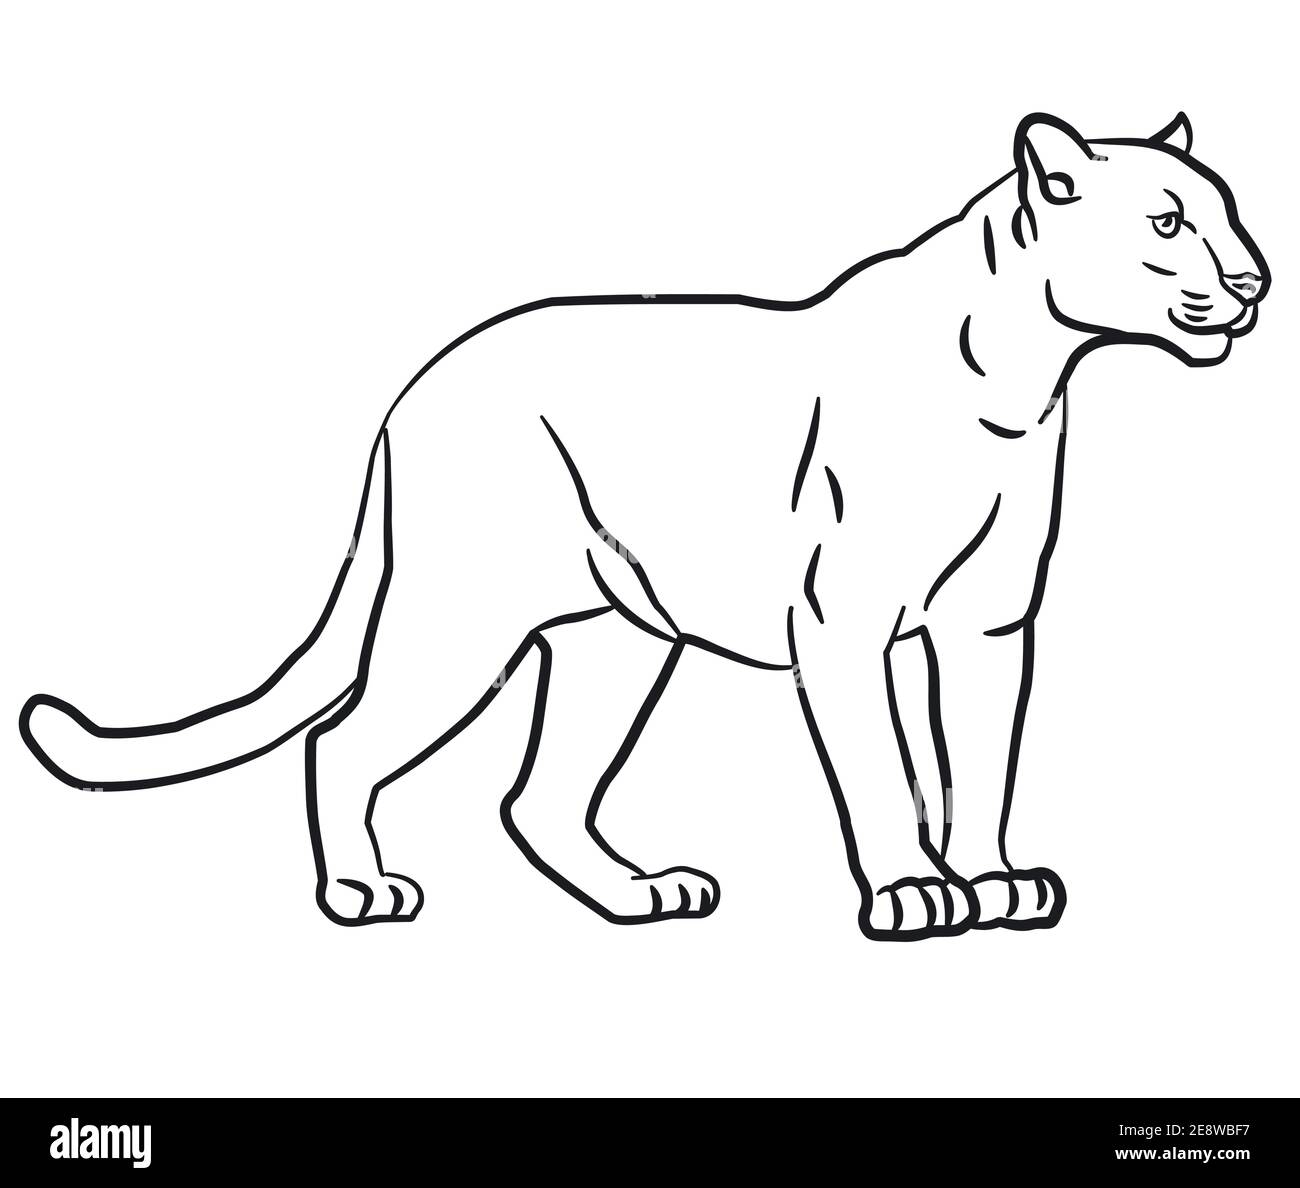 Illustration du dessin linéaire de contour du puma sauvage Image  Vectorielle Stock - Alamy